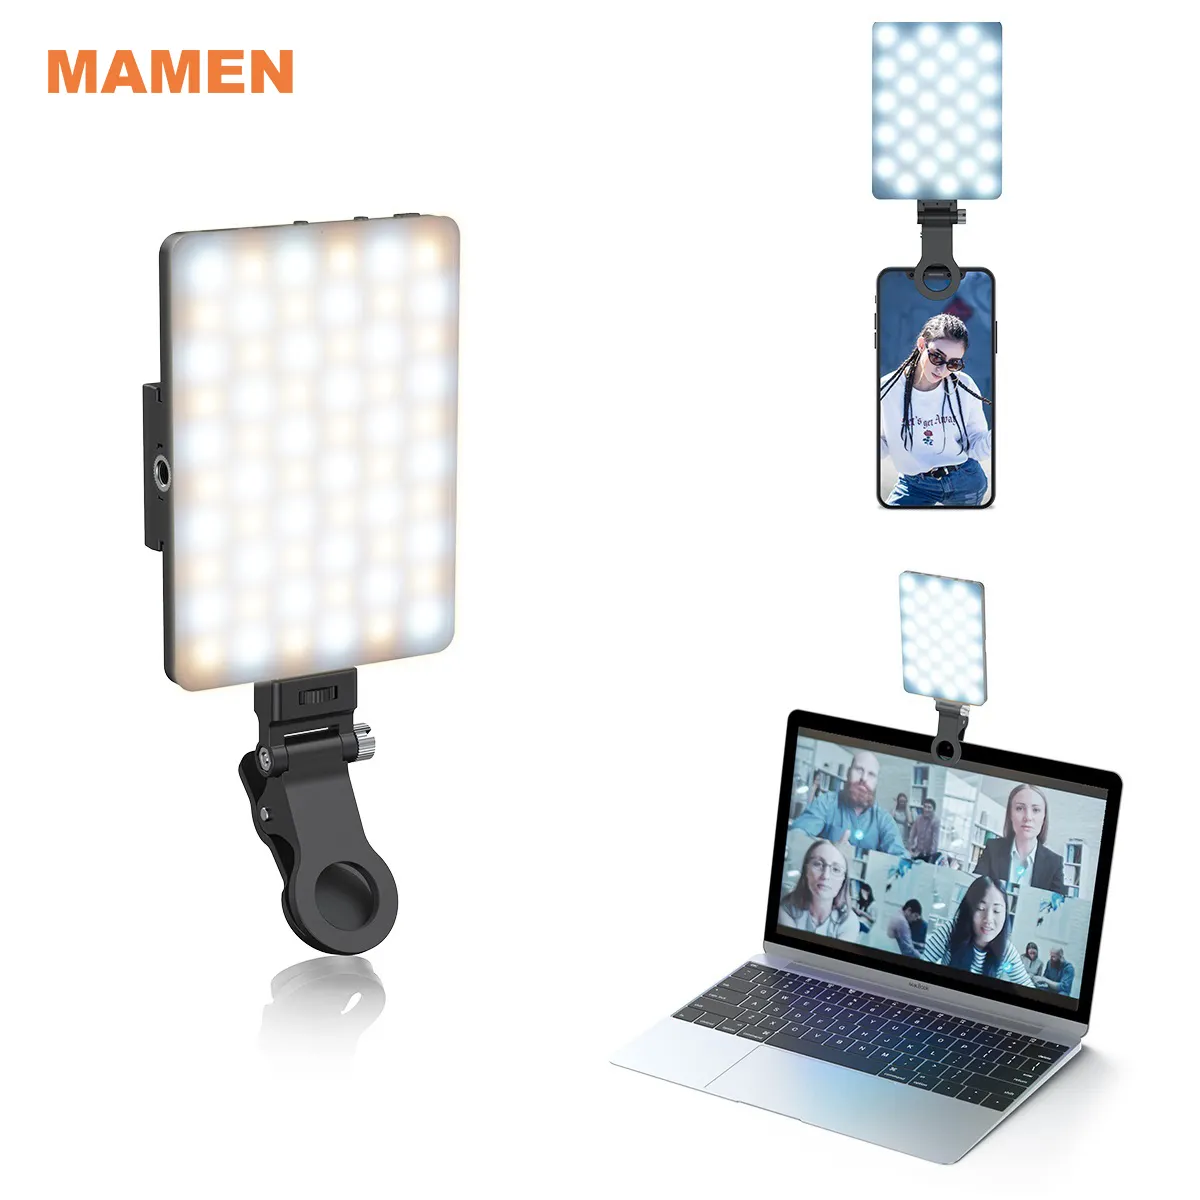 Lampu Ring Led untuk fotografi, lampu cincin kilat Led Mini dapat diisi ulang, lampu kilat foto ponsel Selfie, lampu pencahayaan untuk fotografi